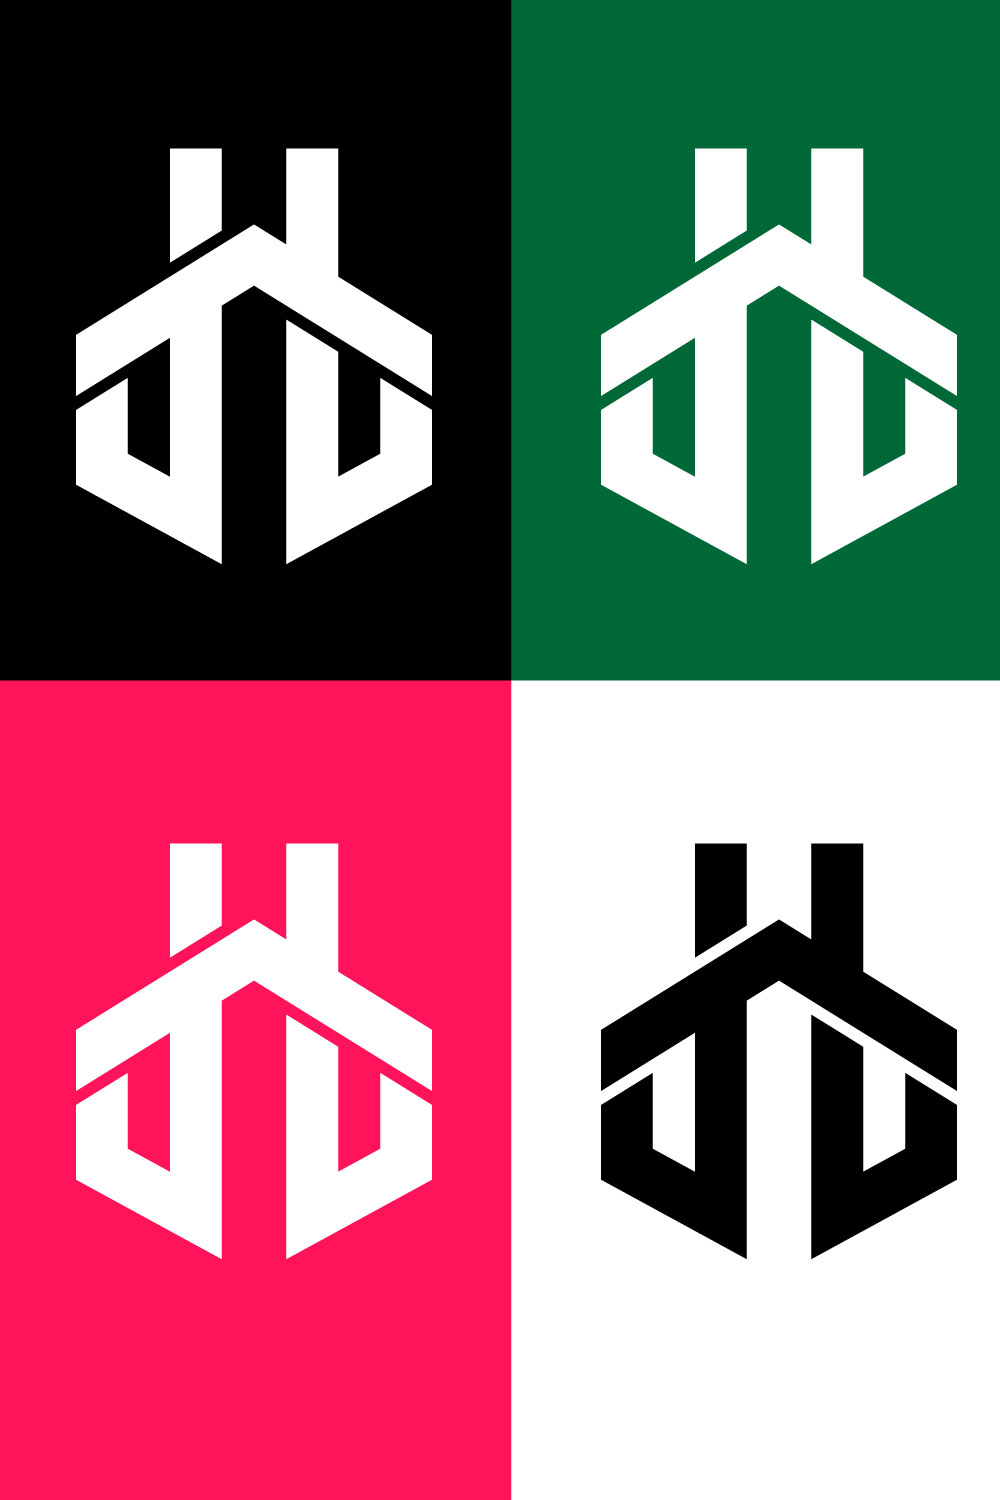 TT Monogram Letter Logo Vector pinterest image.